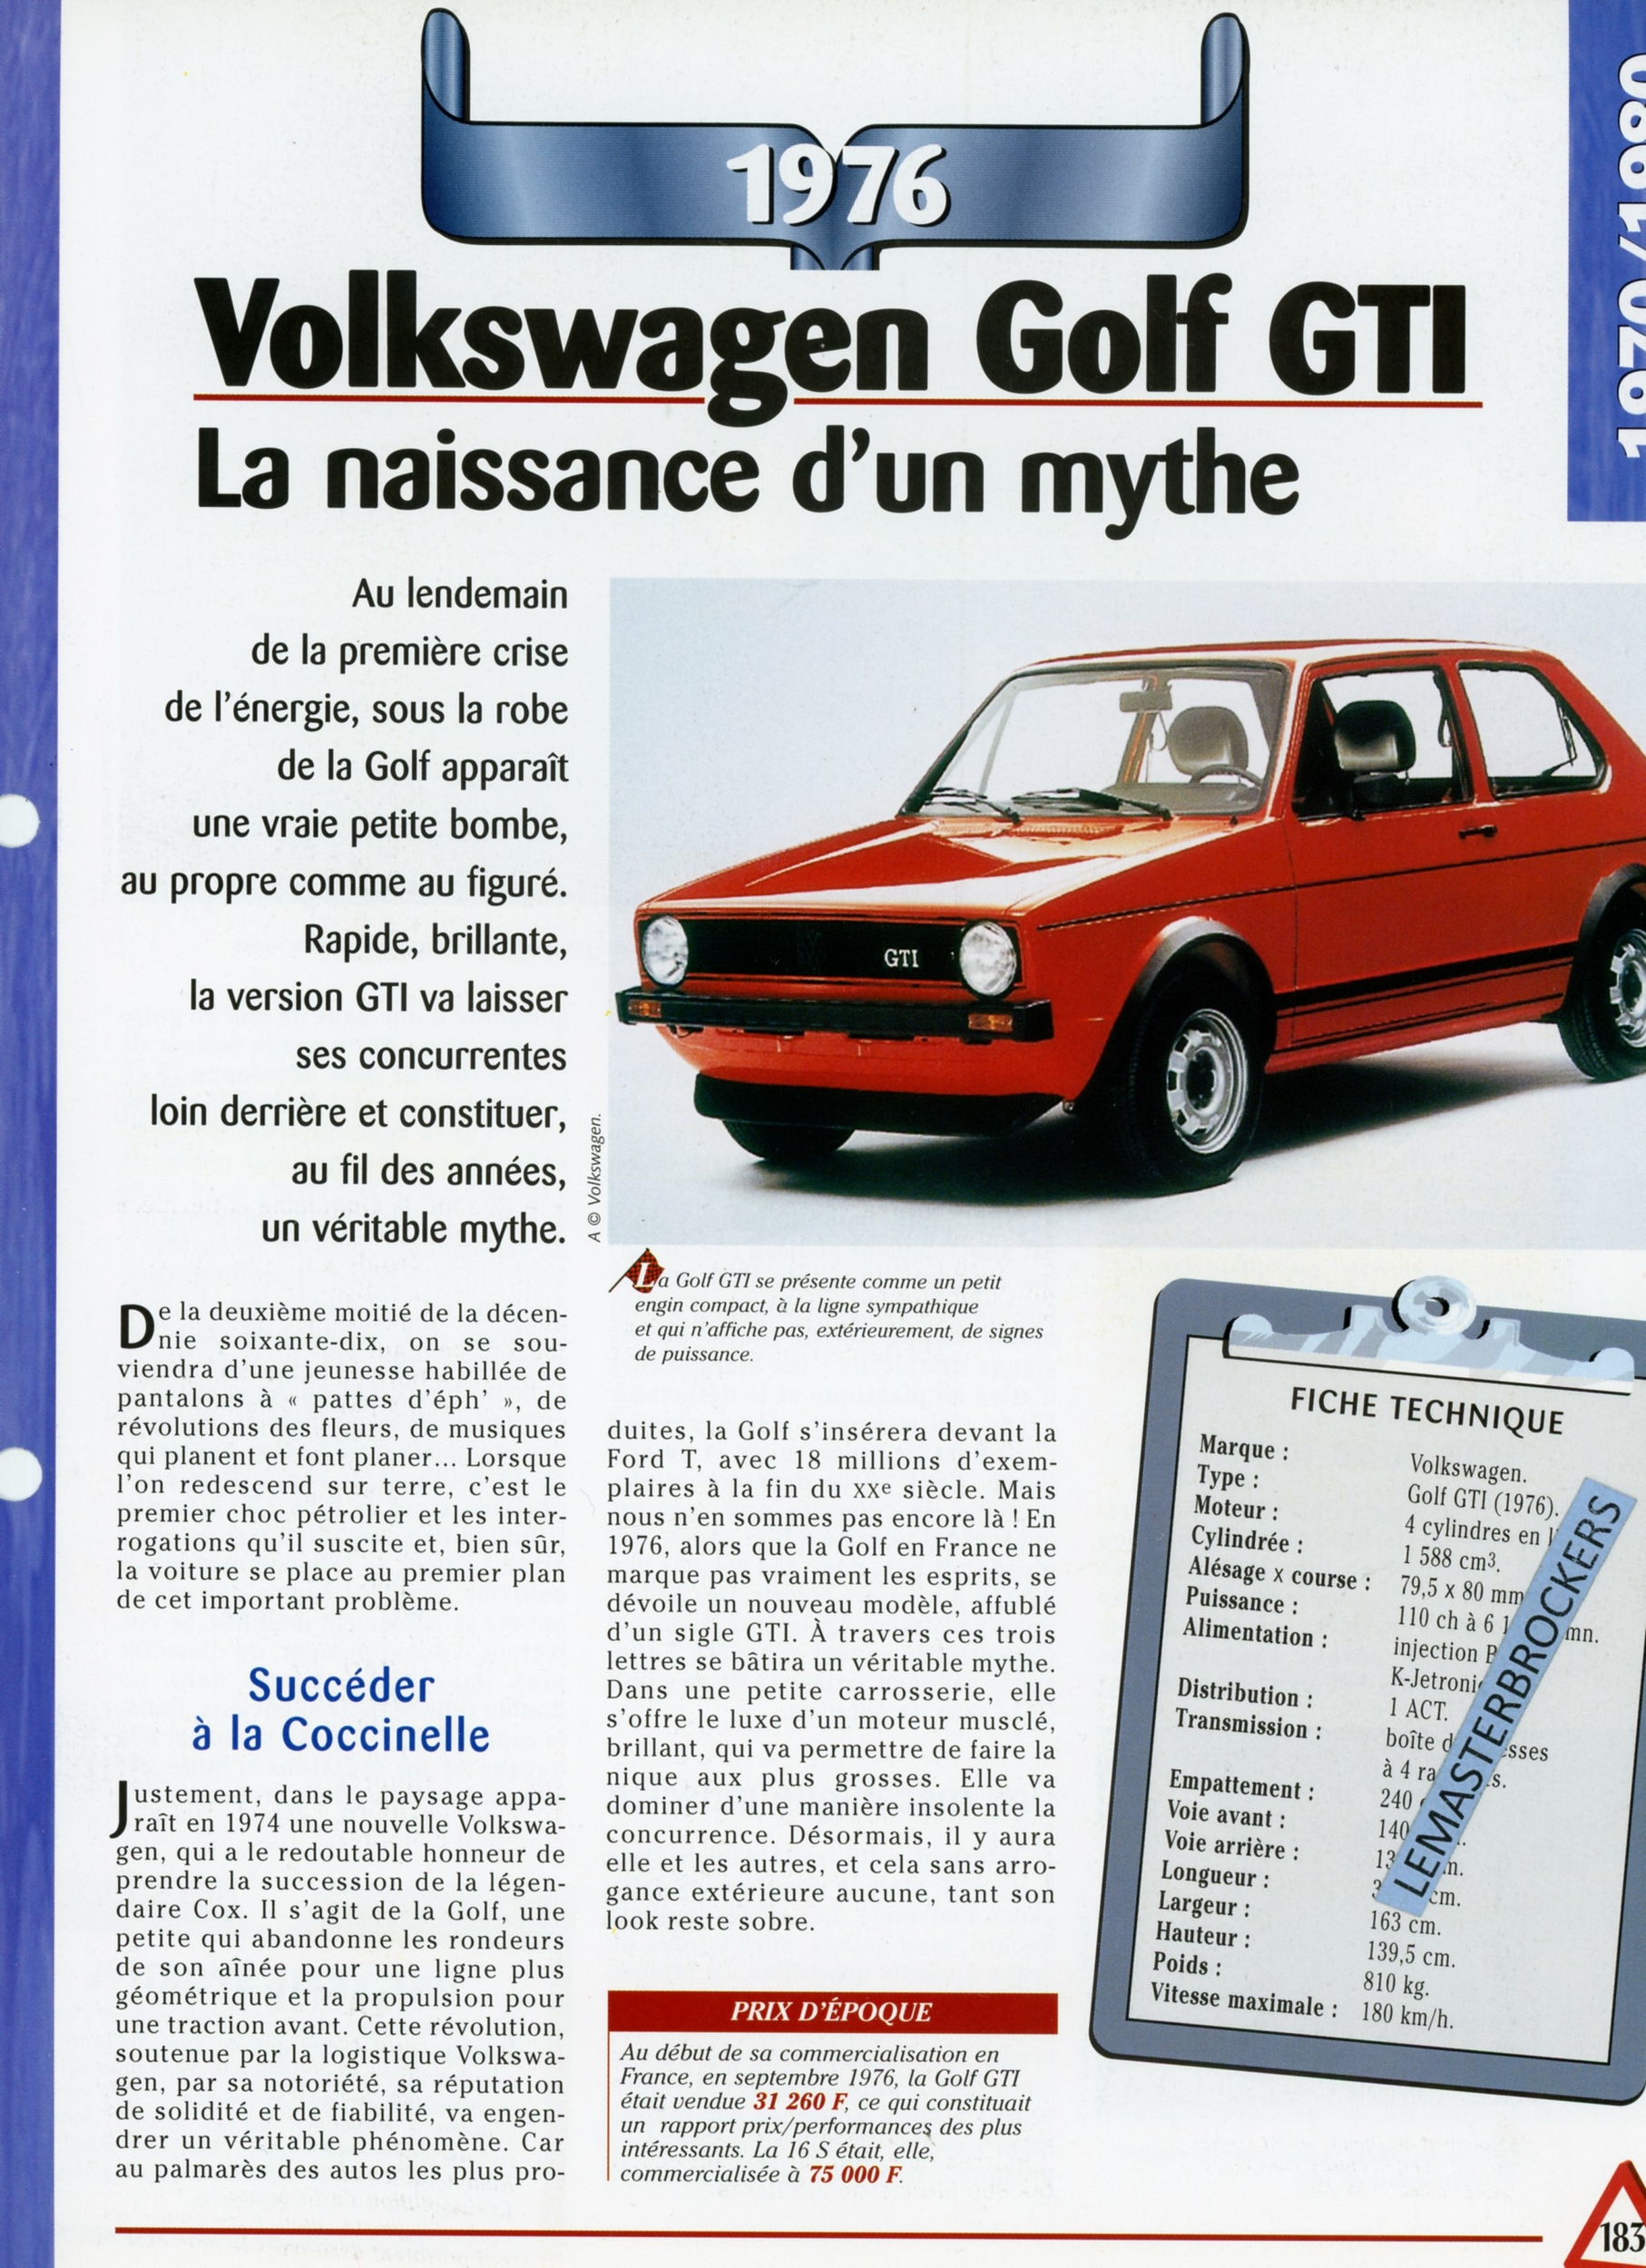 FICHE TECHNIQUE VW VOLKSWAGEN GOLF GTI 1976 - FICHE AUTO - HACHETTE